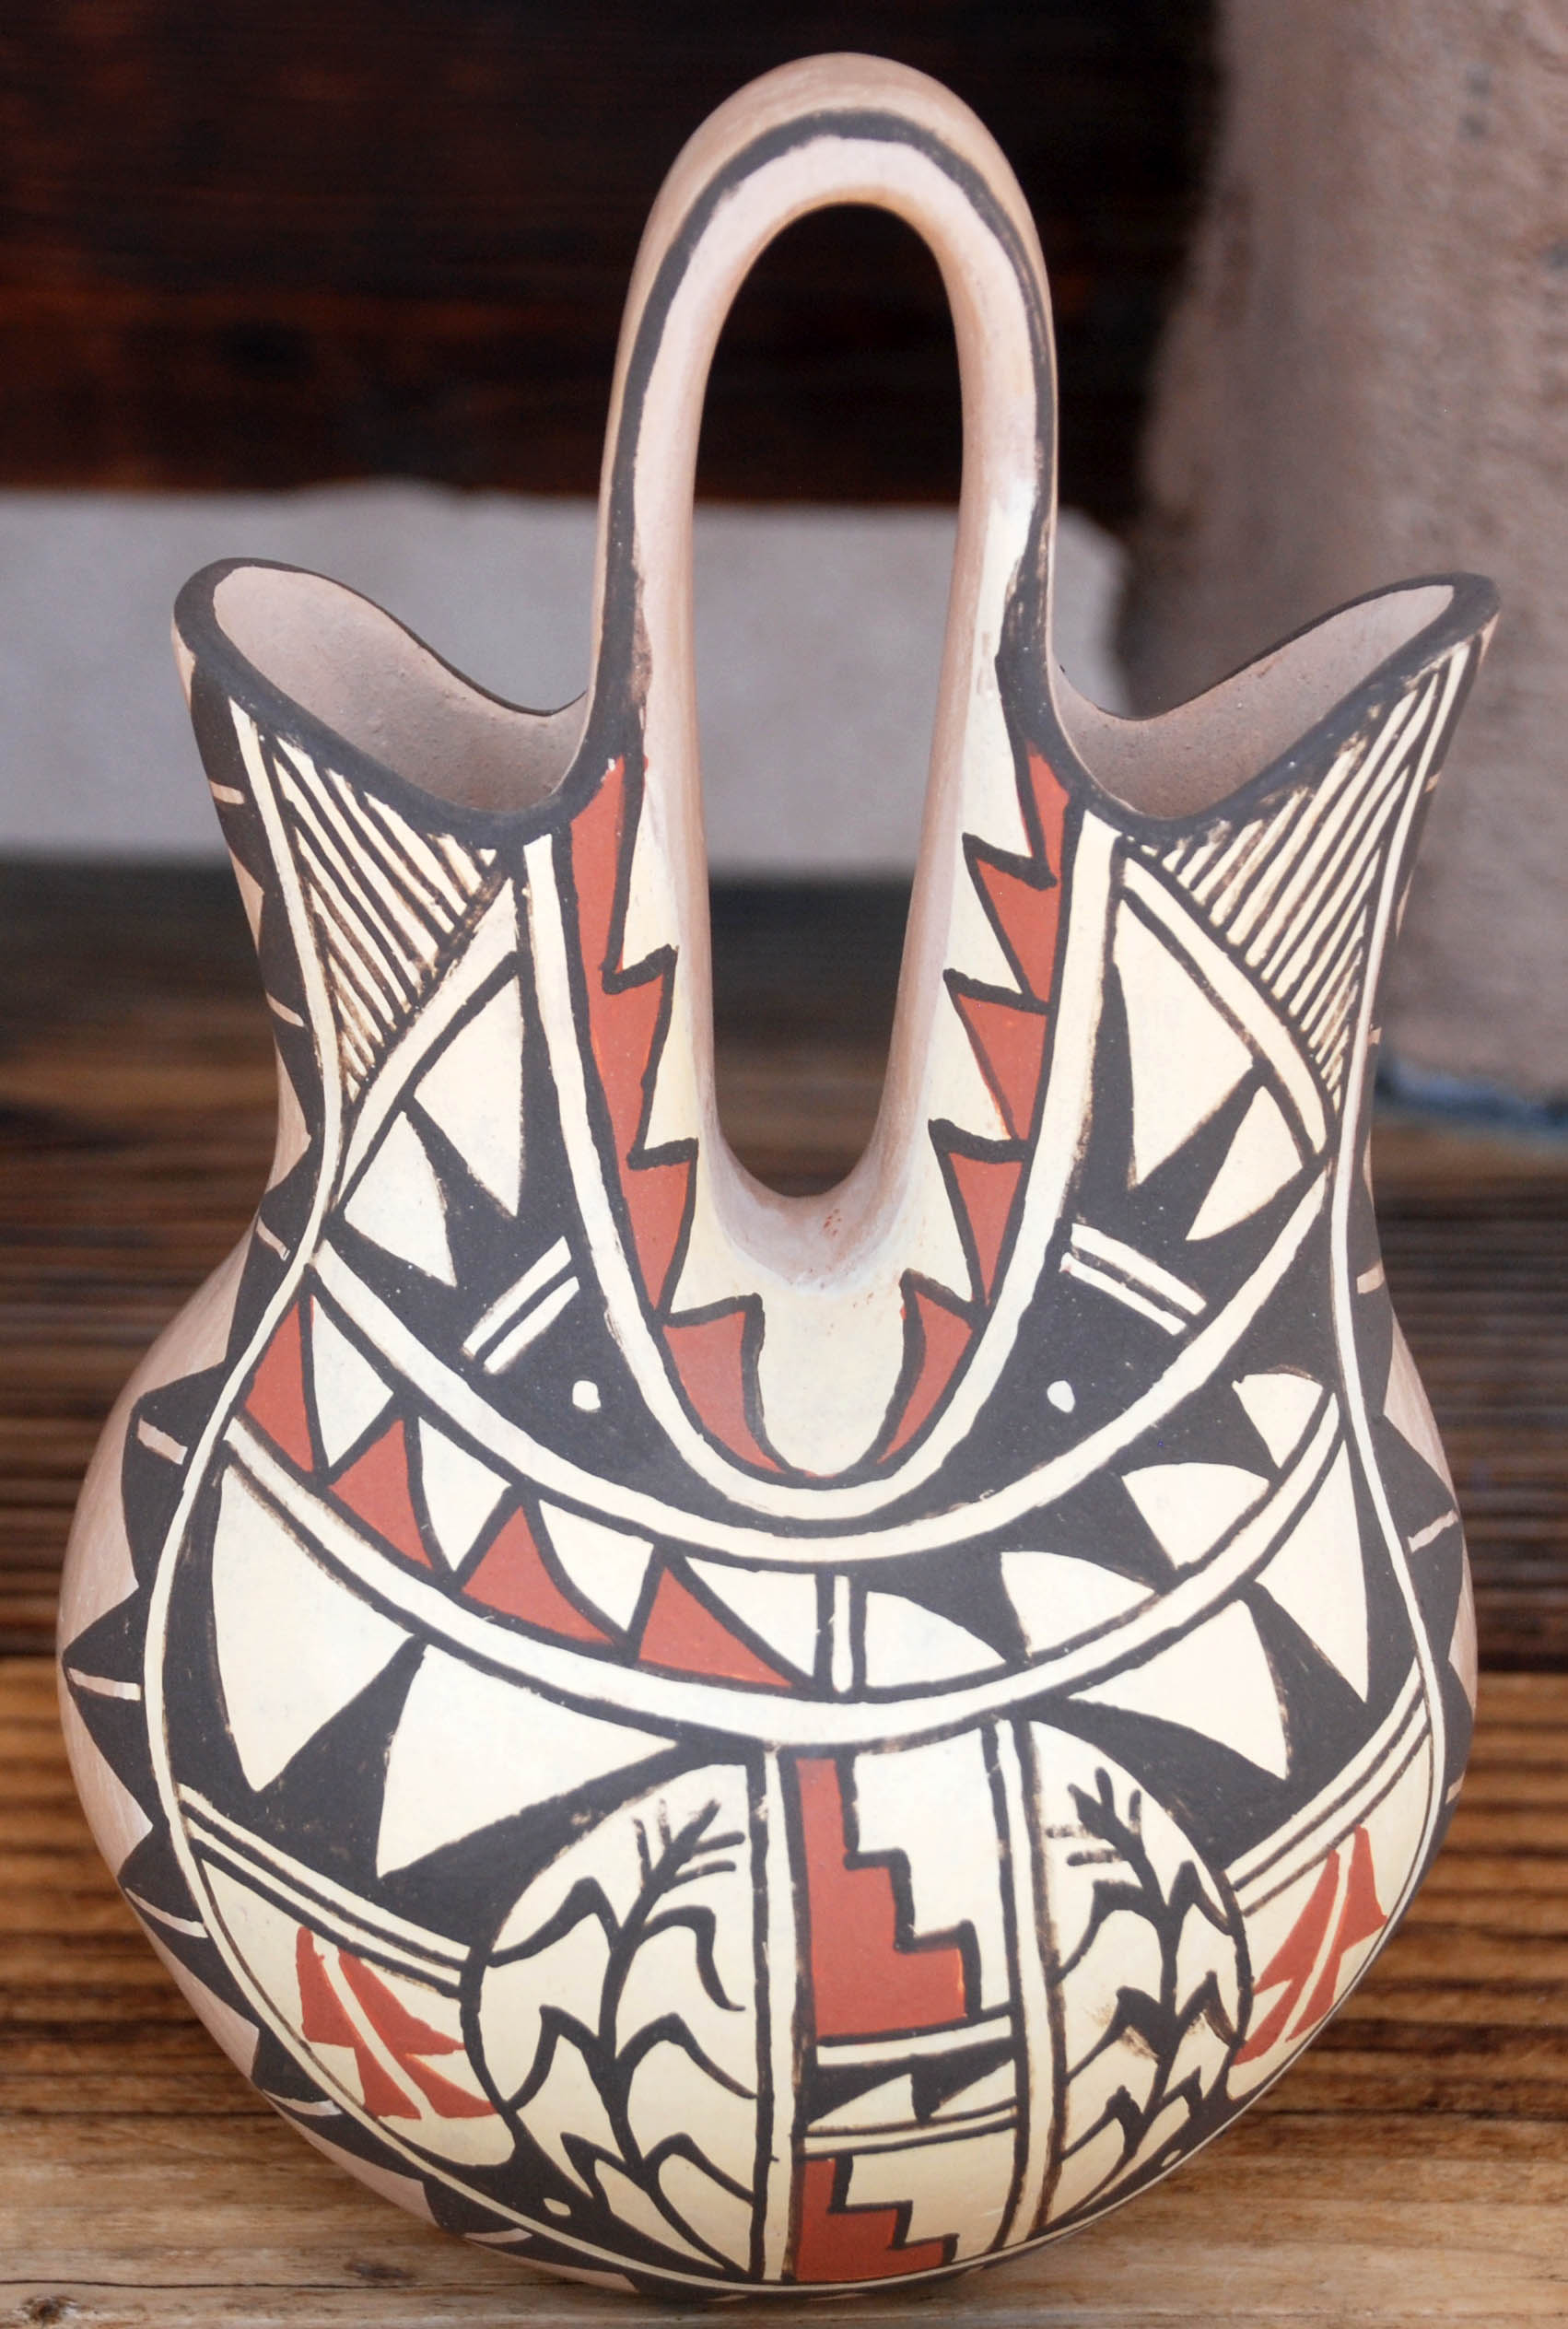 Juanta Fragua | Jemez Pueblo Wedding Vase | Penfield Gallery of Indian Arts | Albuquerque | New Mexico